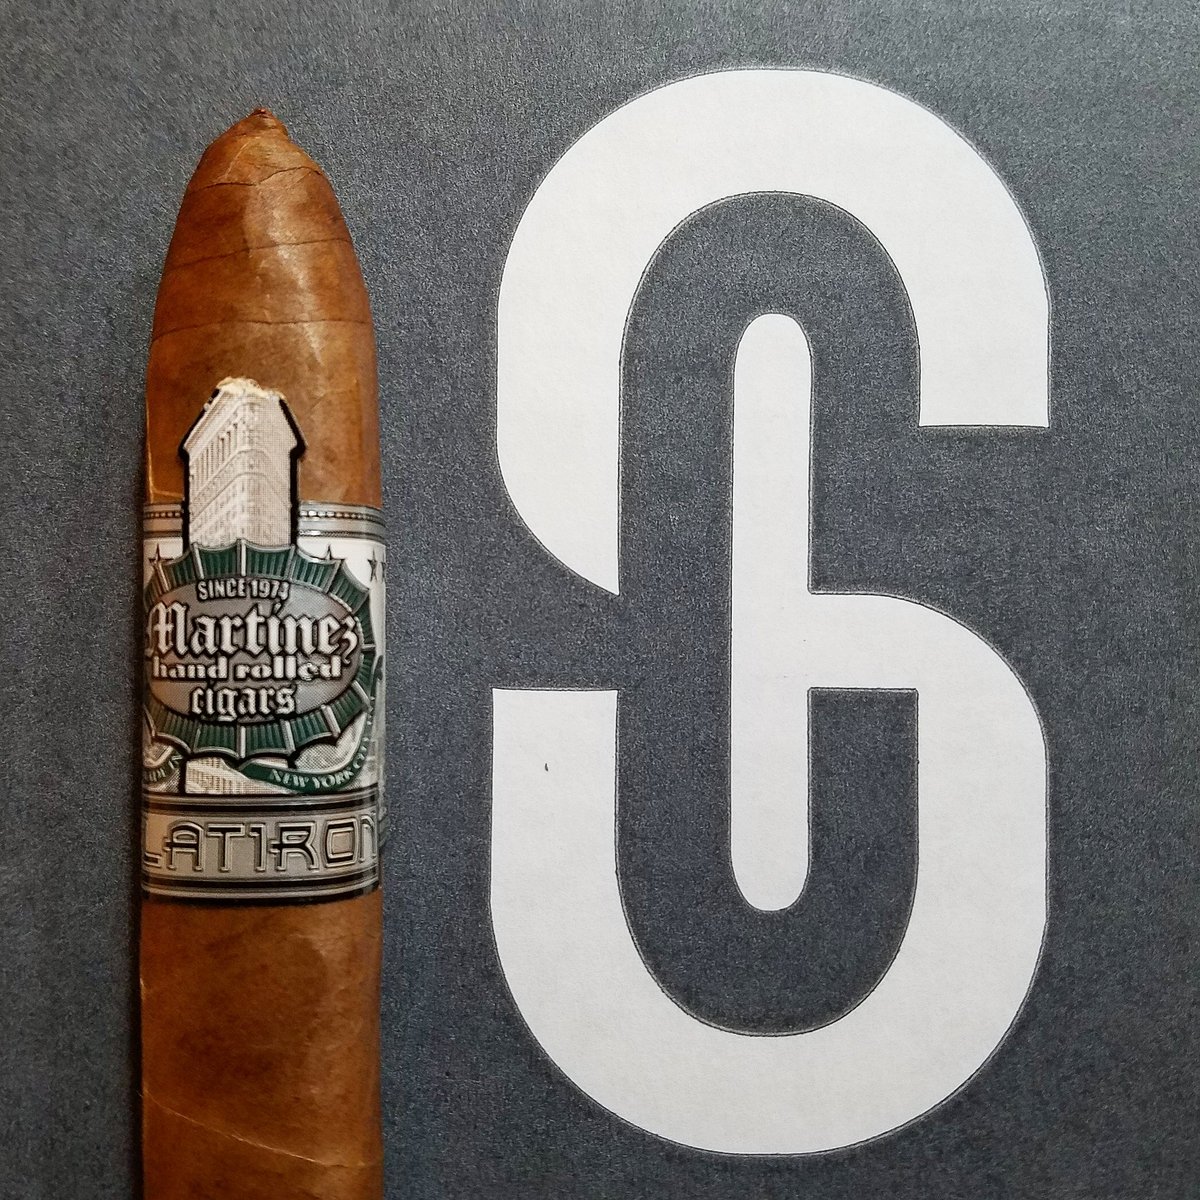 Cigar Saveur members love Martinez!